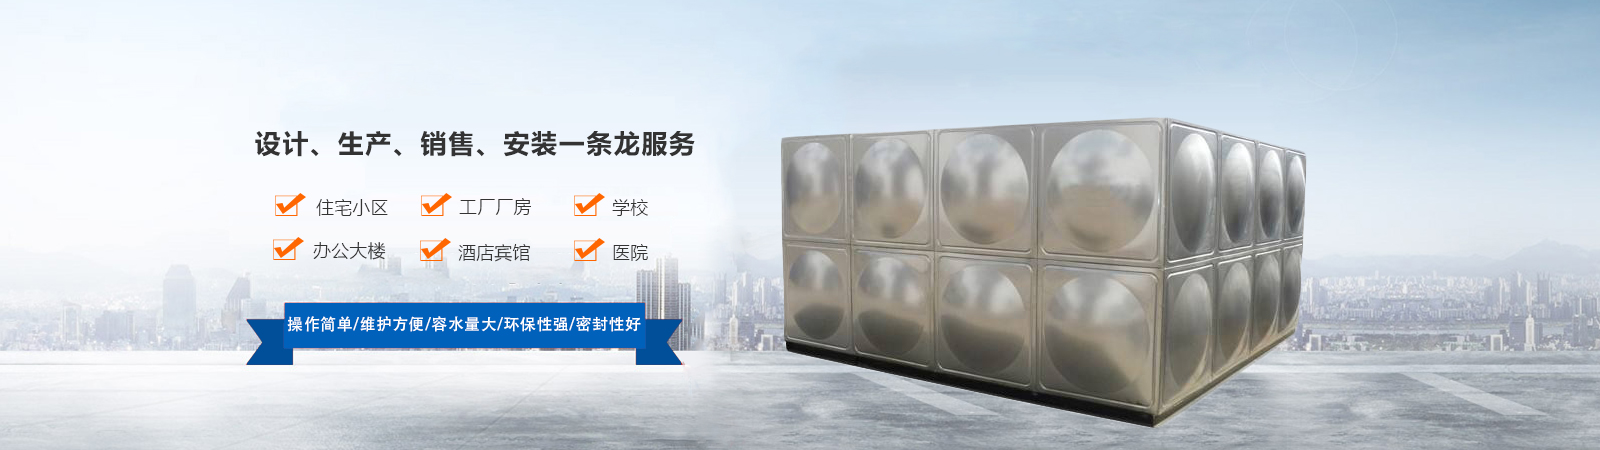 不锈钢保温水箱、北京本地不锈钢保温水箱、北京、北京不锈钢保温水箱